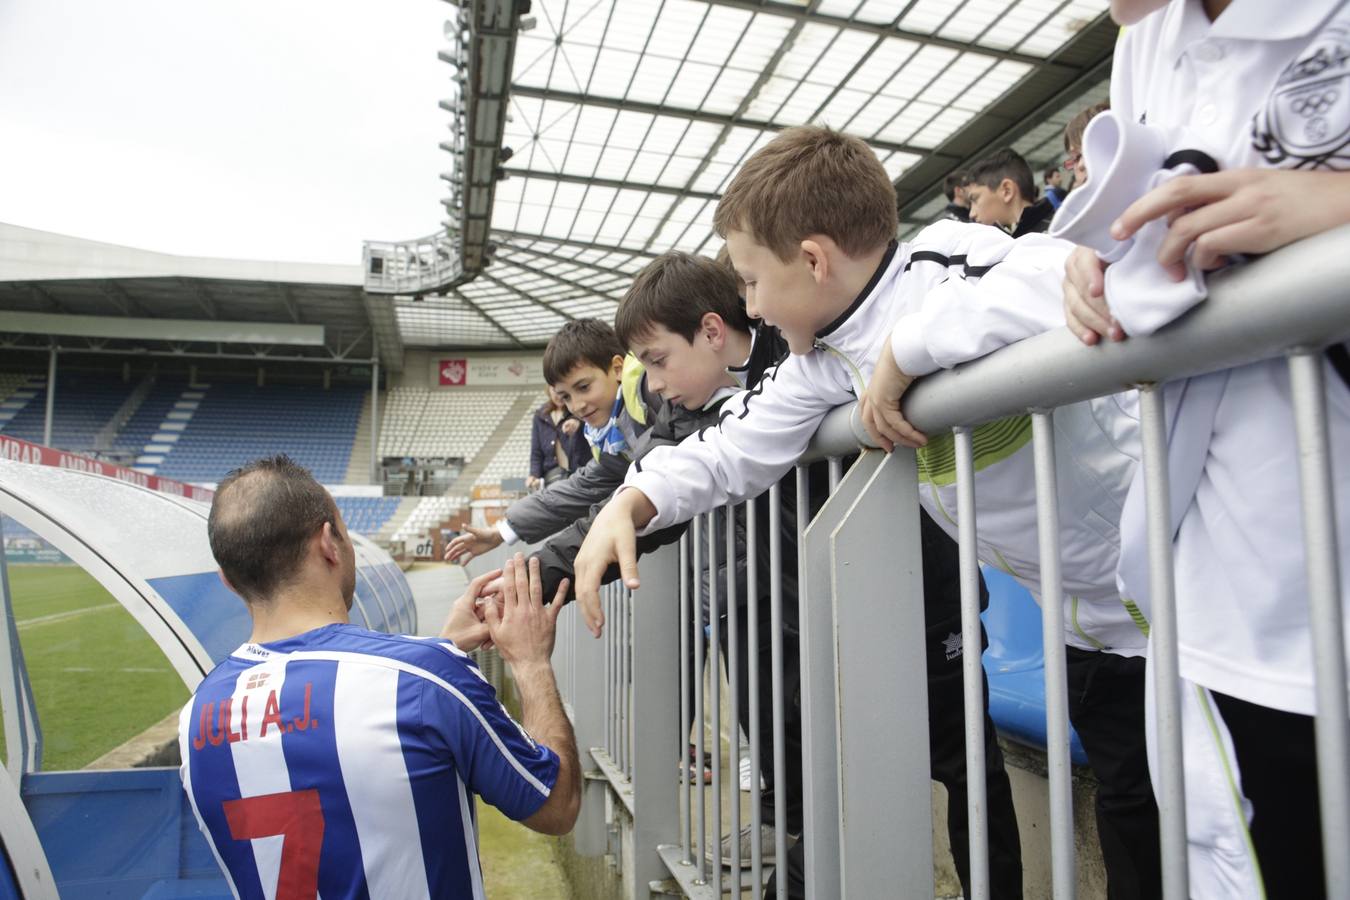 Los jugadores saludan y firman autógrafos a los niños